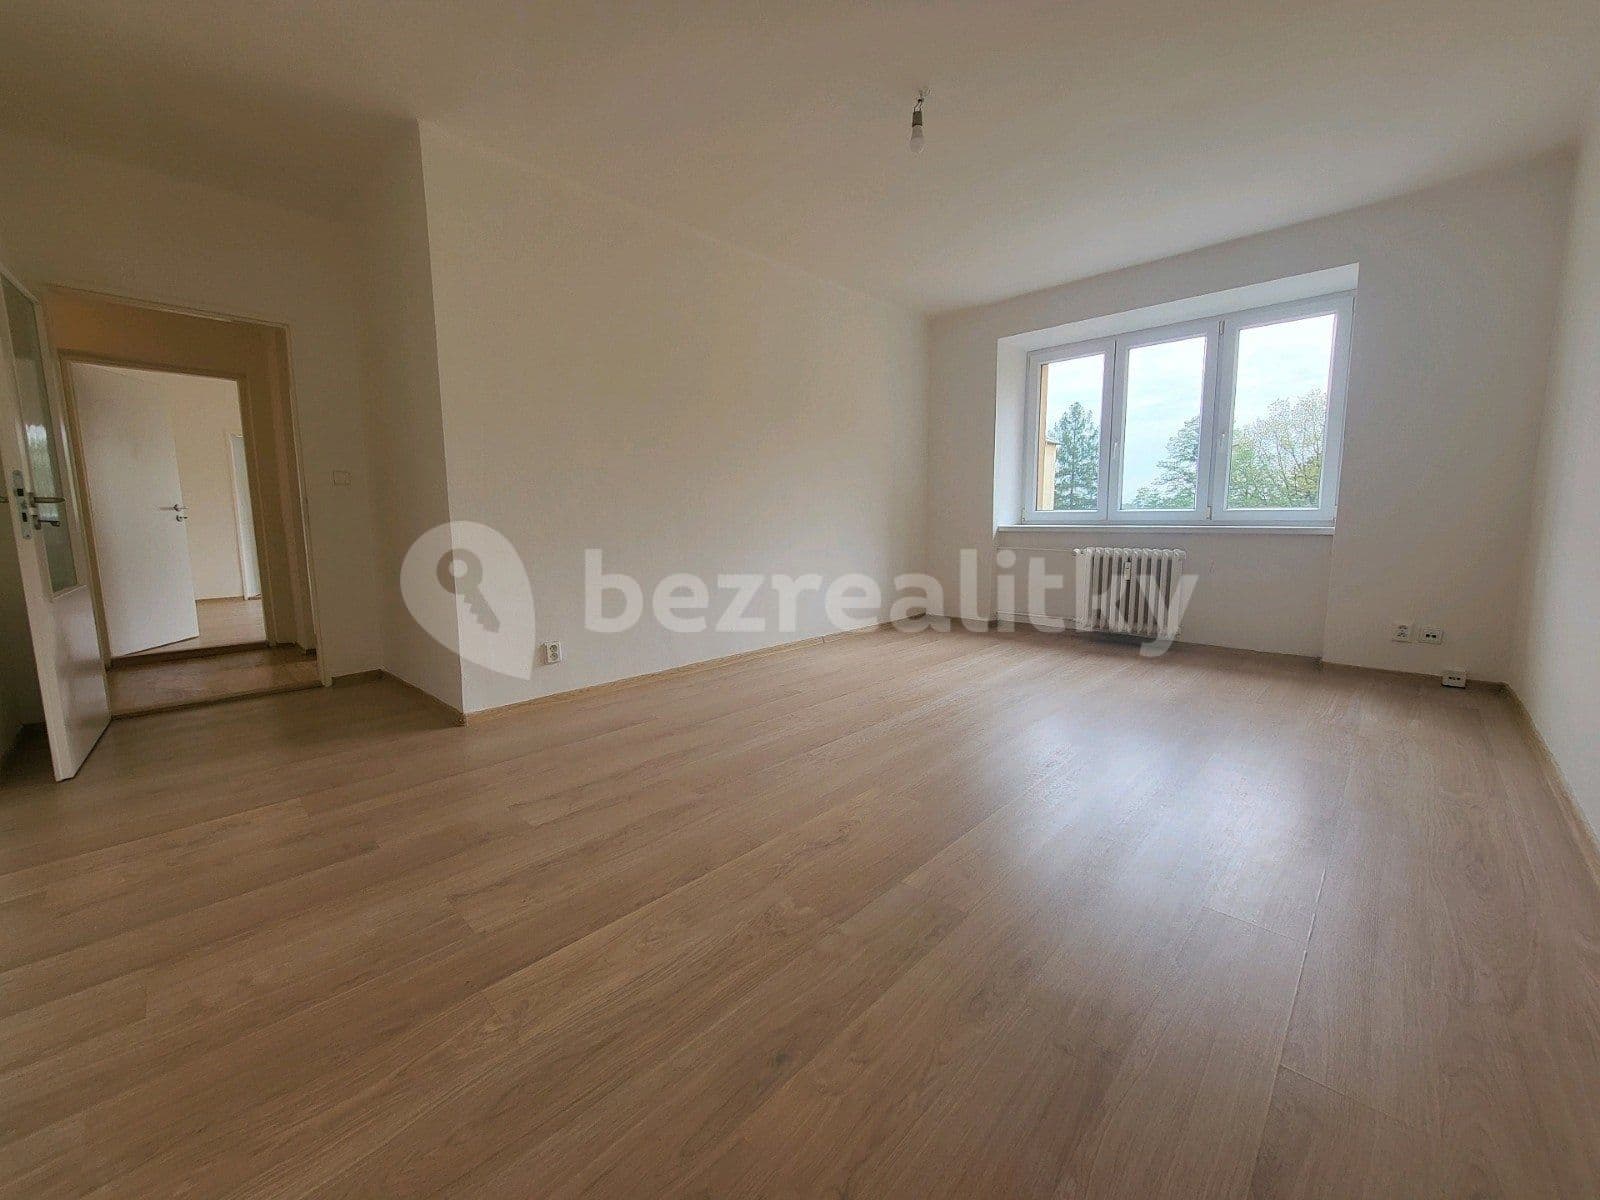 3 bedroom flat to rent, 80 m², nám. T. G. Masaryka, Havířov, Moravskoslezský Region